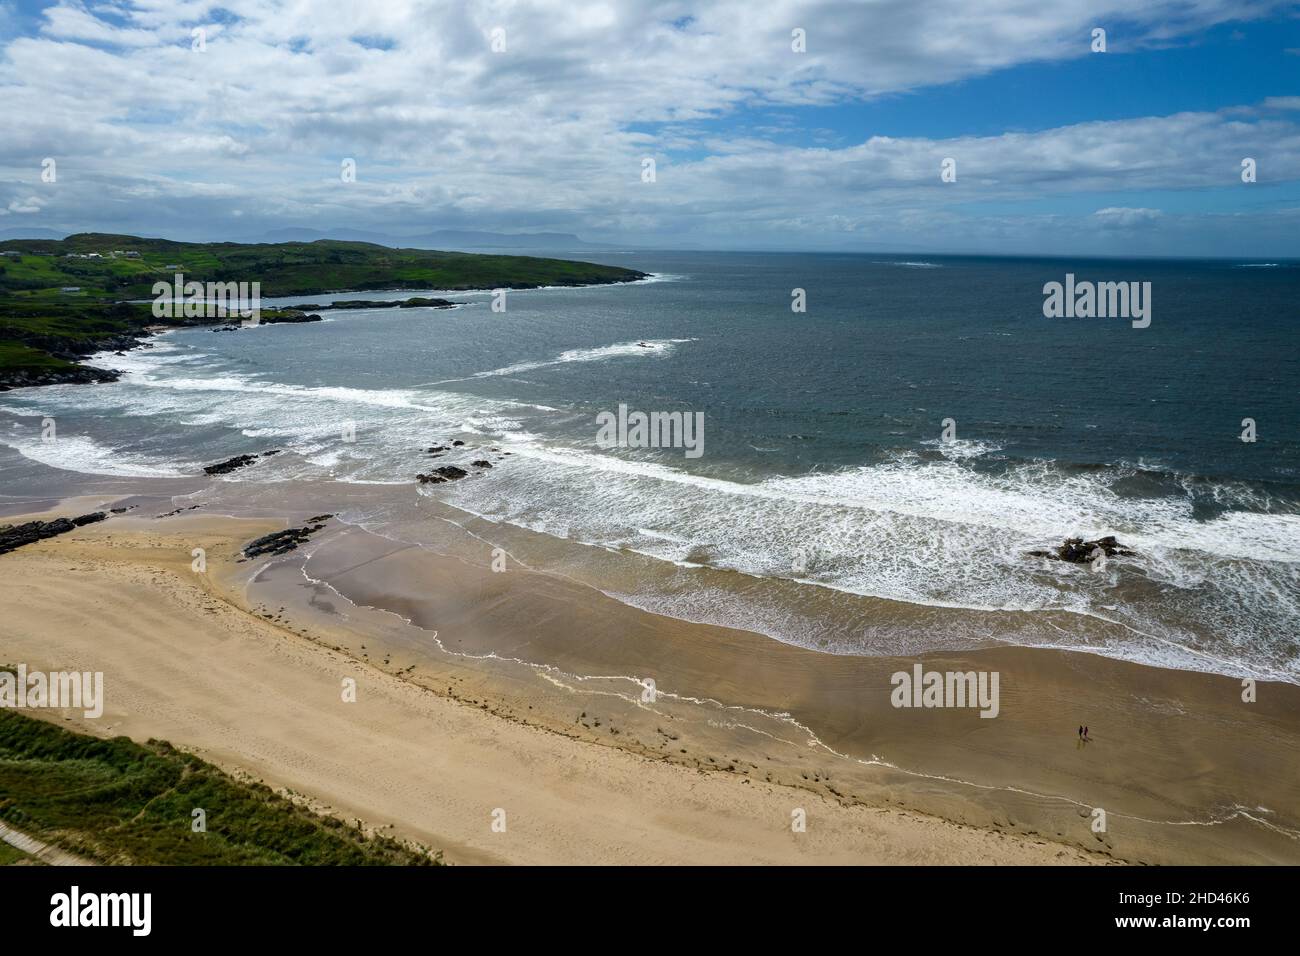 Belle photo d'un littoral en Irlande sous le ciel nuageux Banque D'Images